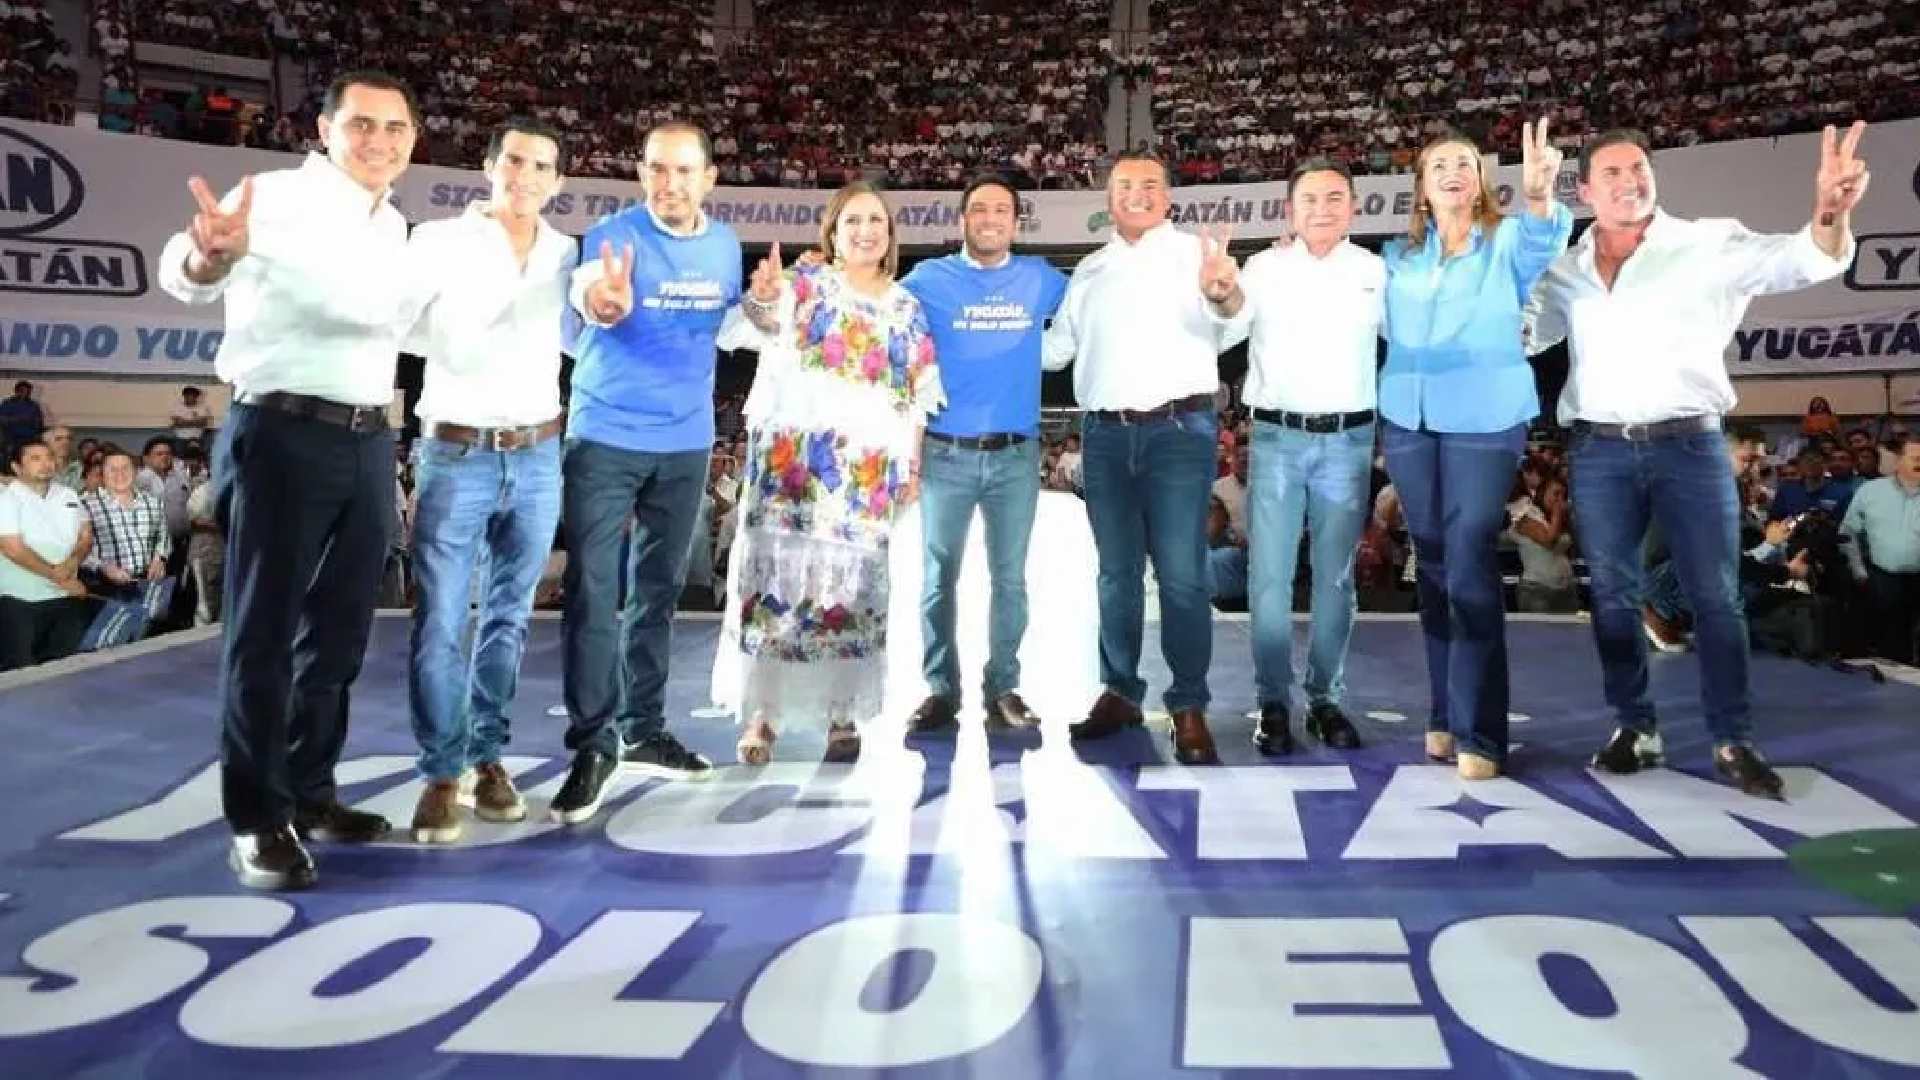 Al grito de "Yucatán un solo equipo" presenta PAN coordinadores de equipo Yucatán